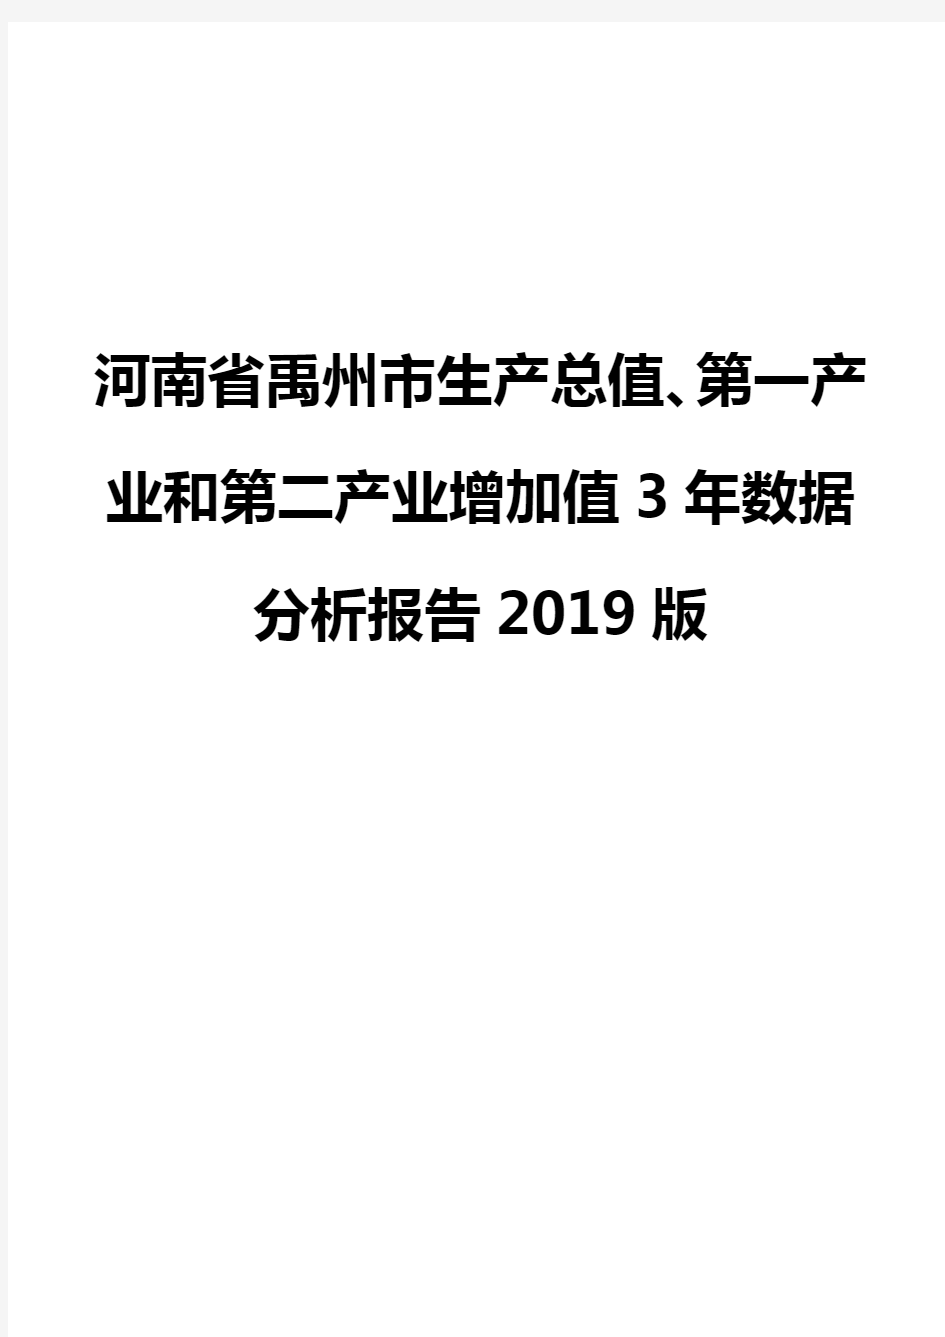 河南省禹州市生产总值、第一产业和第二产业增加值3年数据分析报告2019版